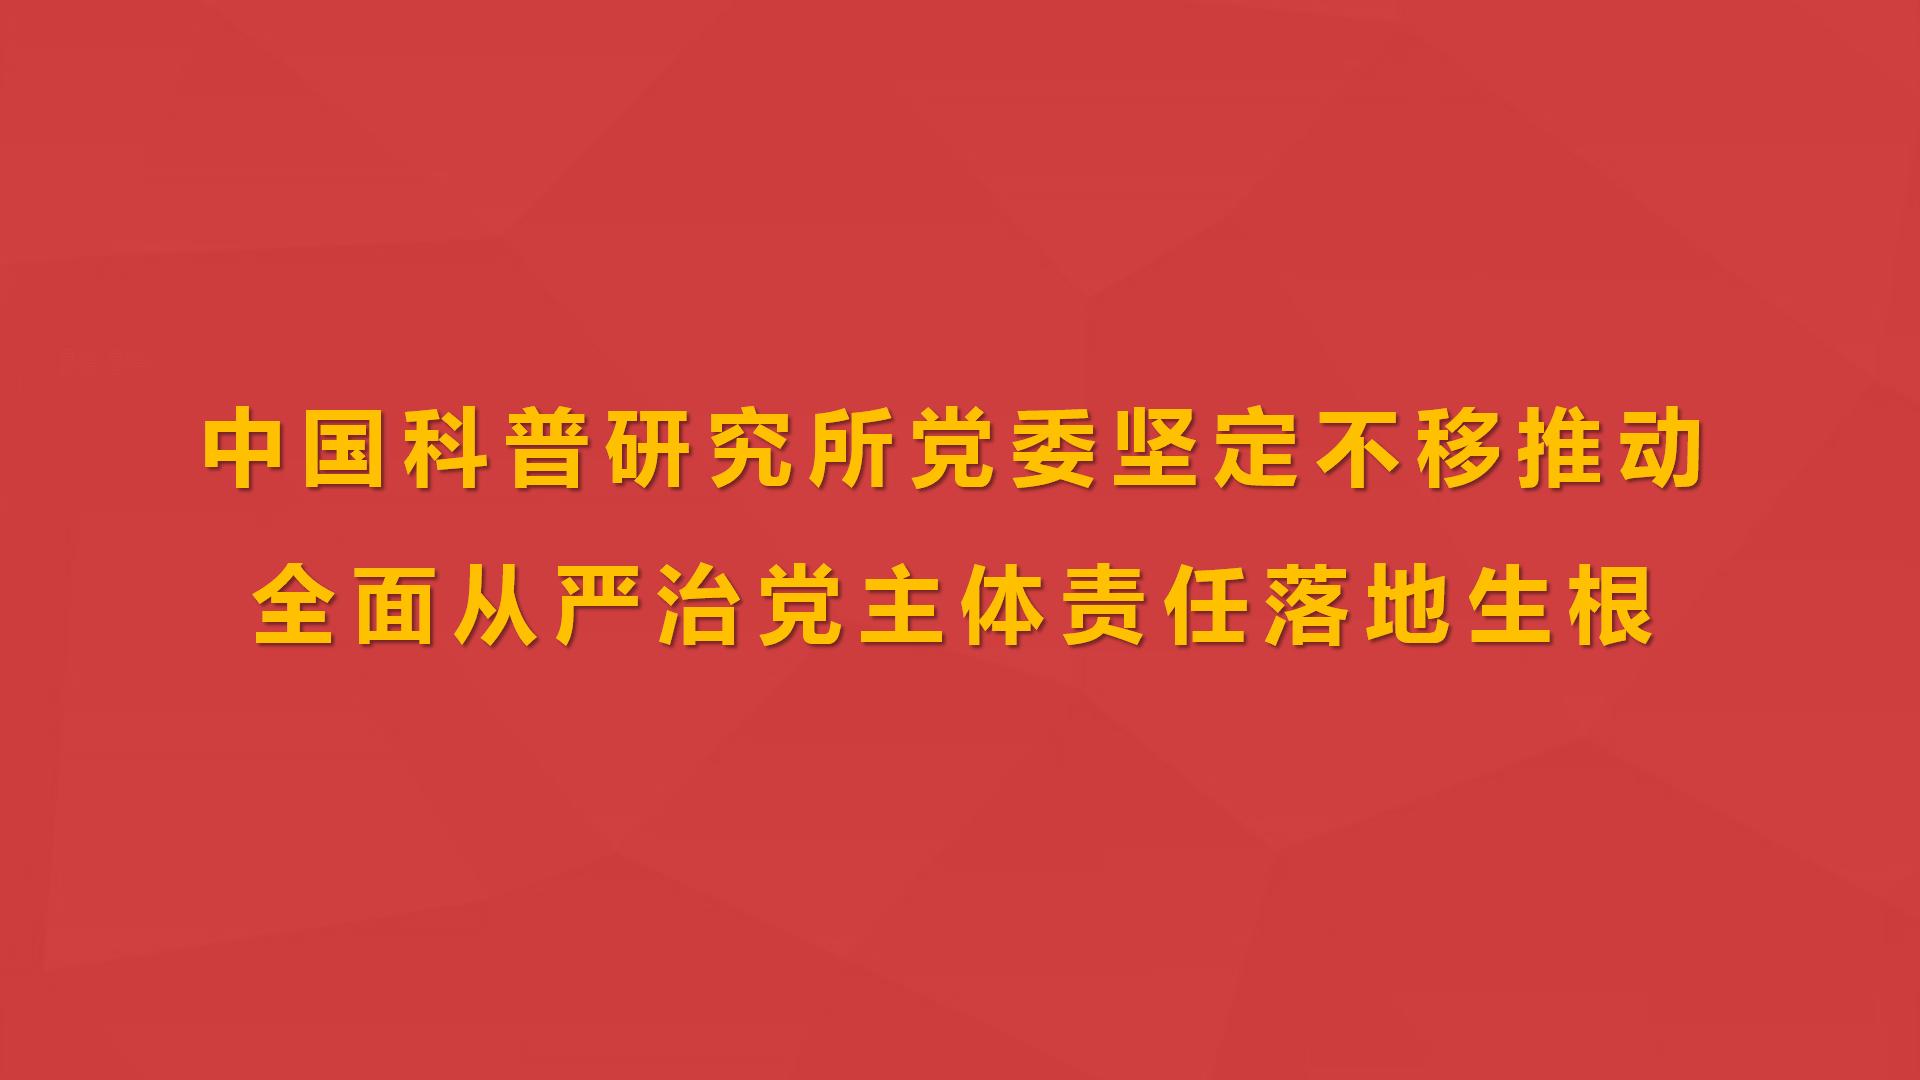 中国科普研究所党委坚定不移推动全面从严治党主体责任落地生根